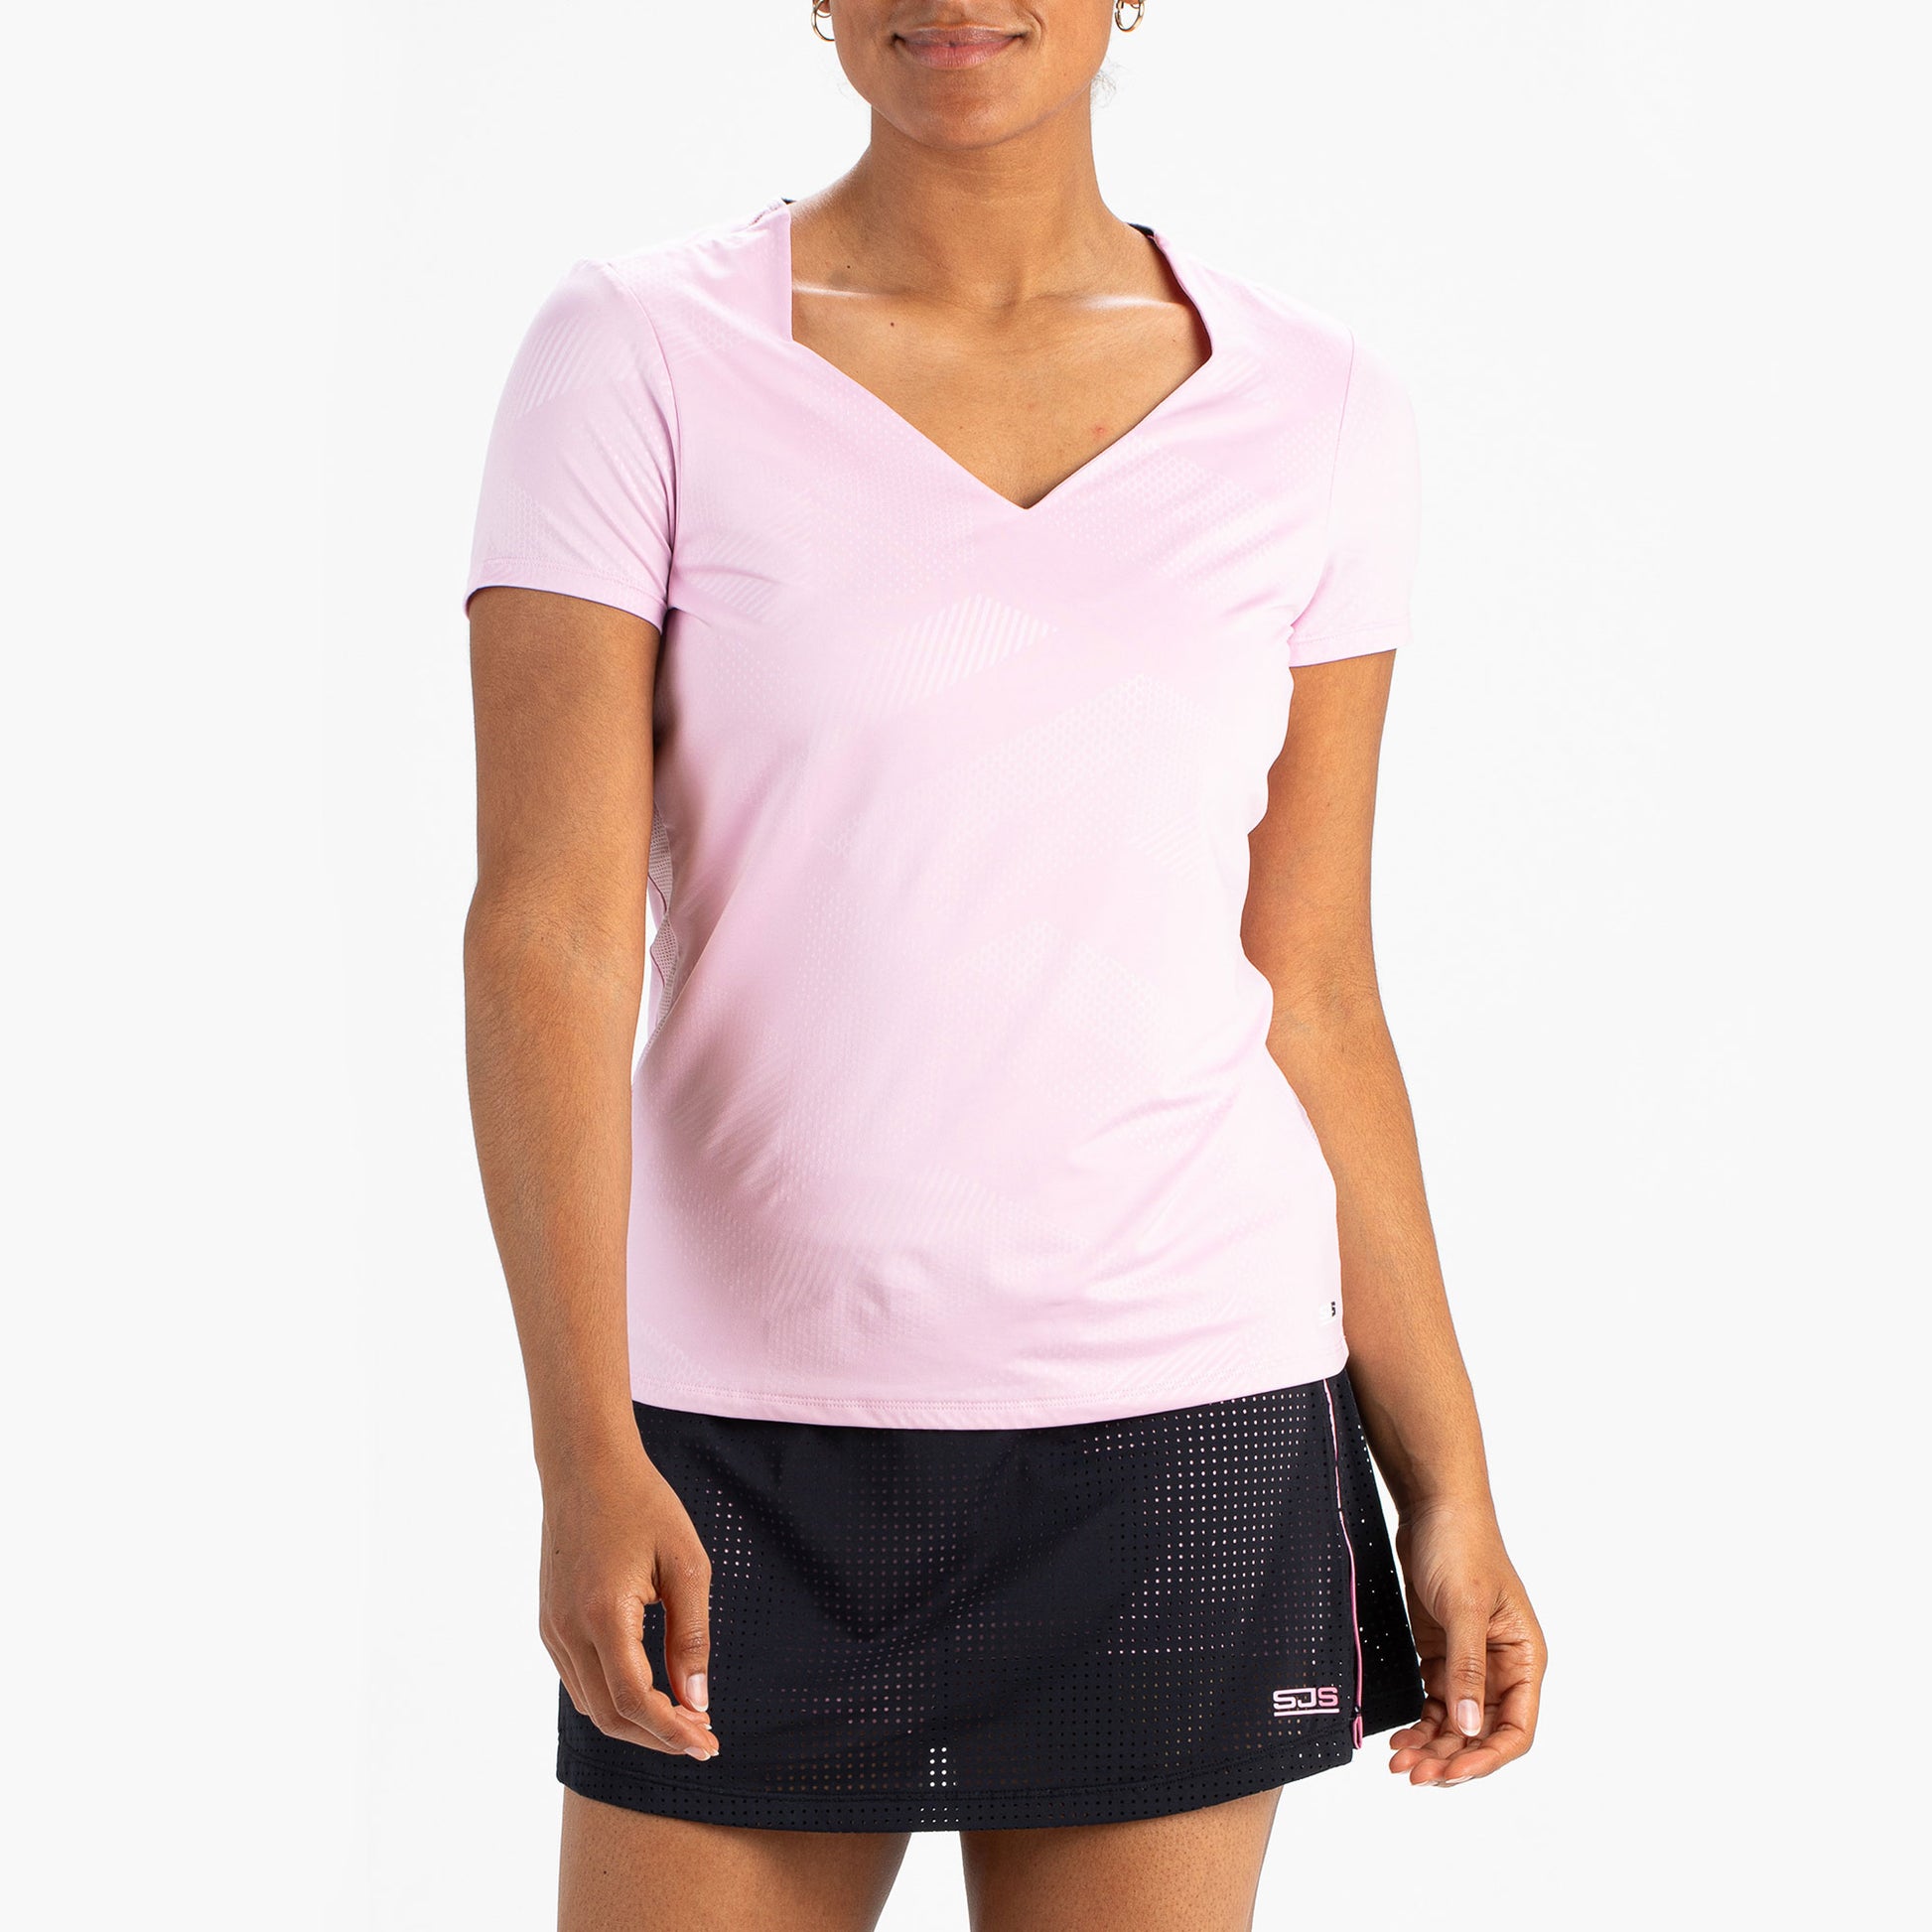 Sjeng Sports Honesty Women's Tennis Shirt Pink (1)